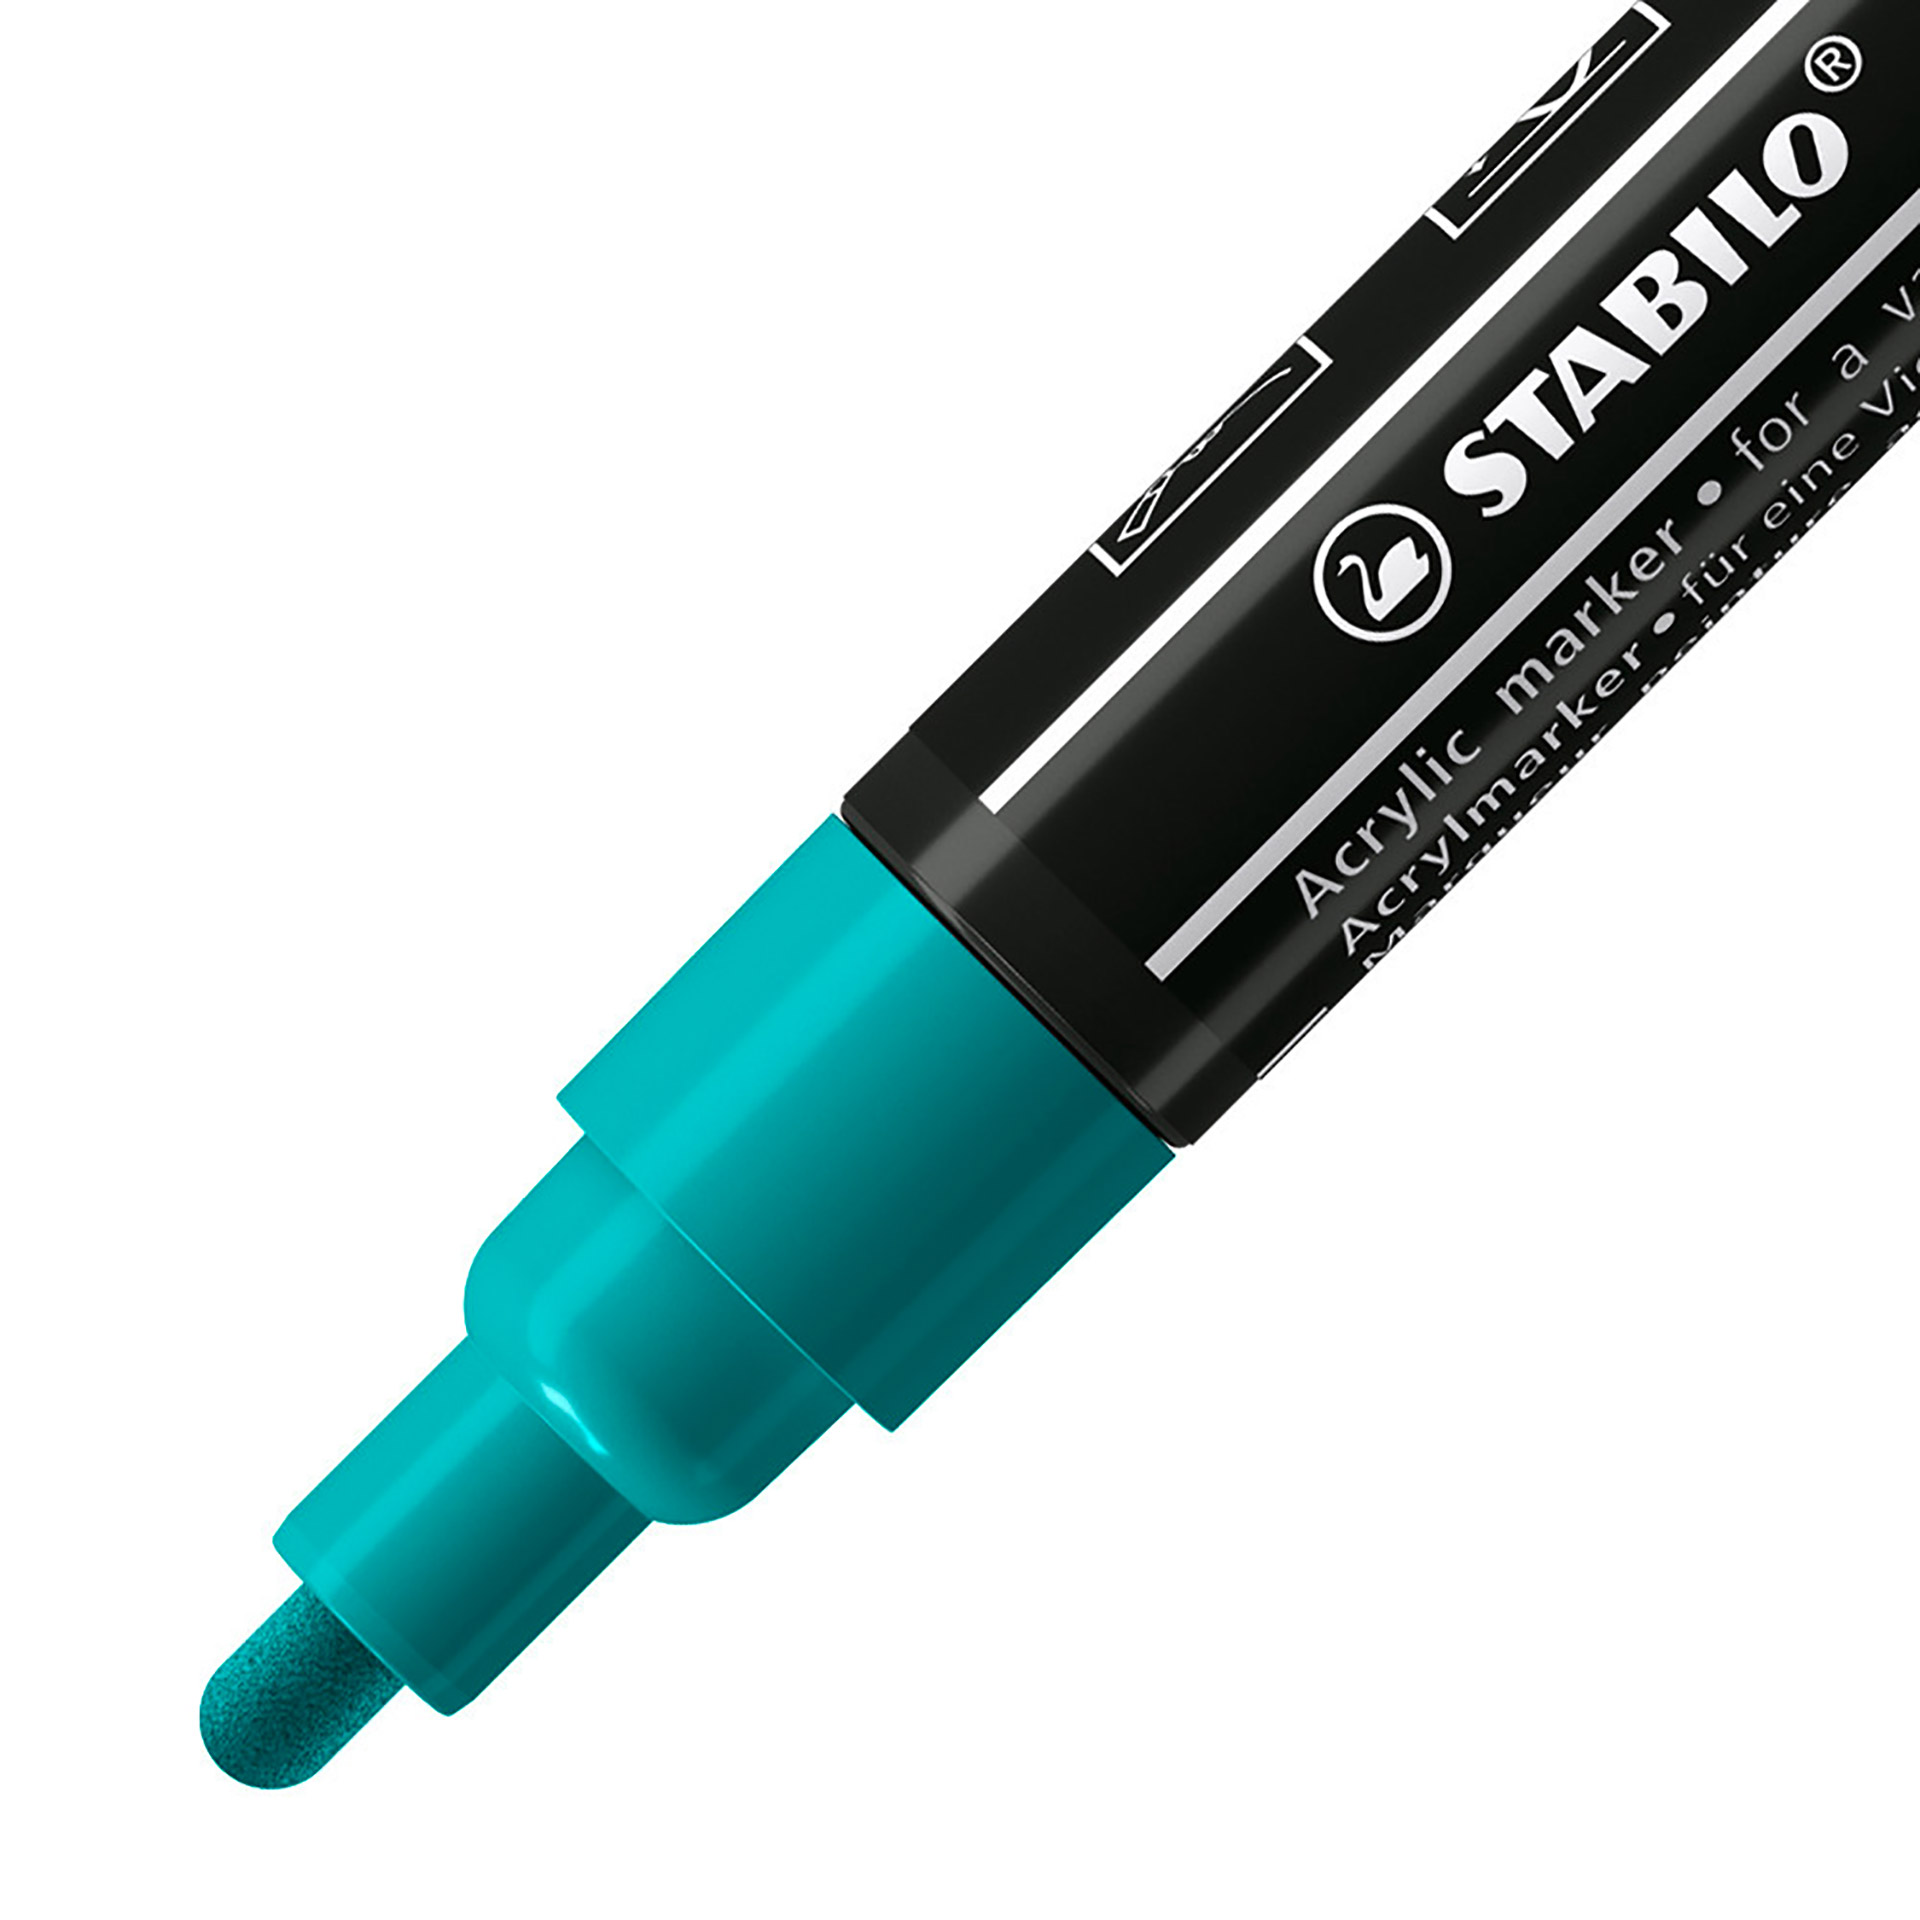 STABILO FREE Acrylic - T300 Punta rotonda 2-3mm - Confezione da 5 - Verde Pino, , large